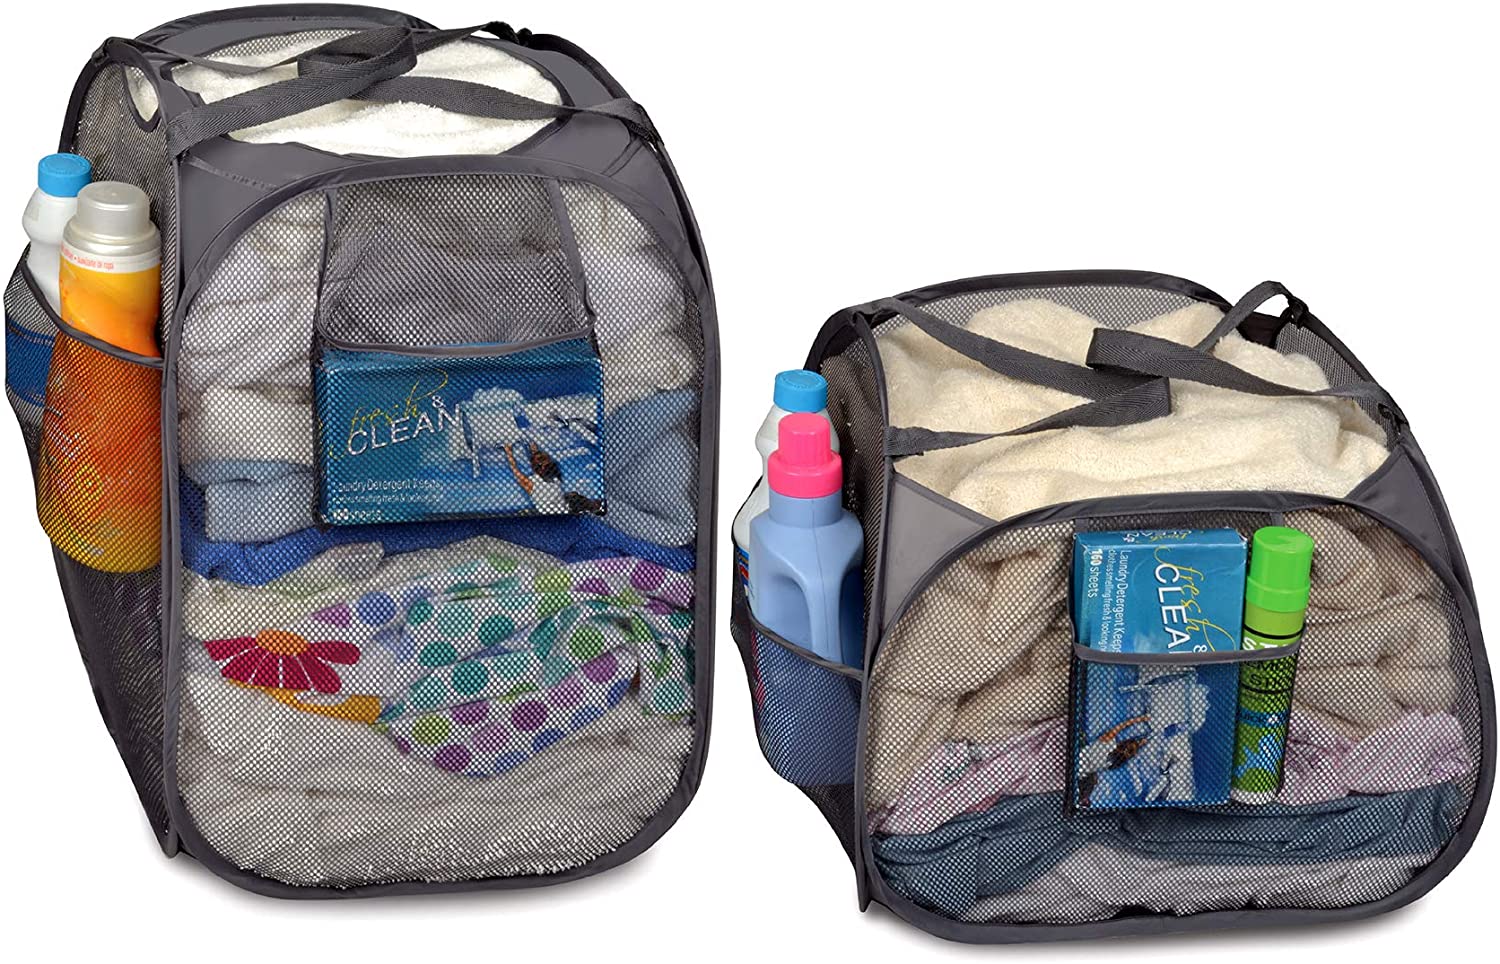 SmartDesign Smart Design Pop-Up Spiral Laundry Hamper Bag Mesh